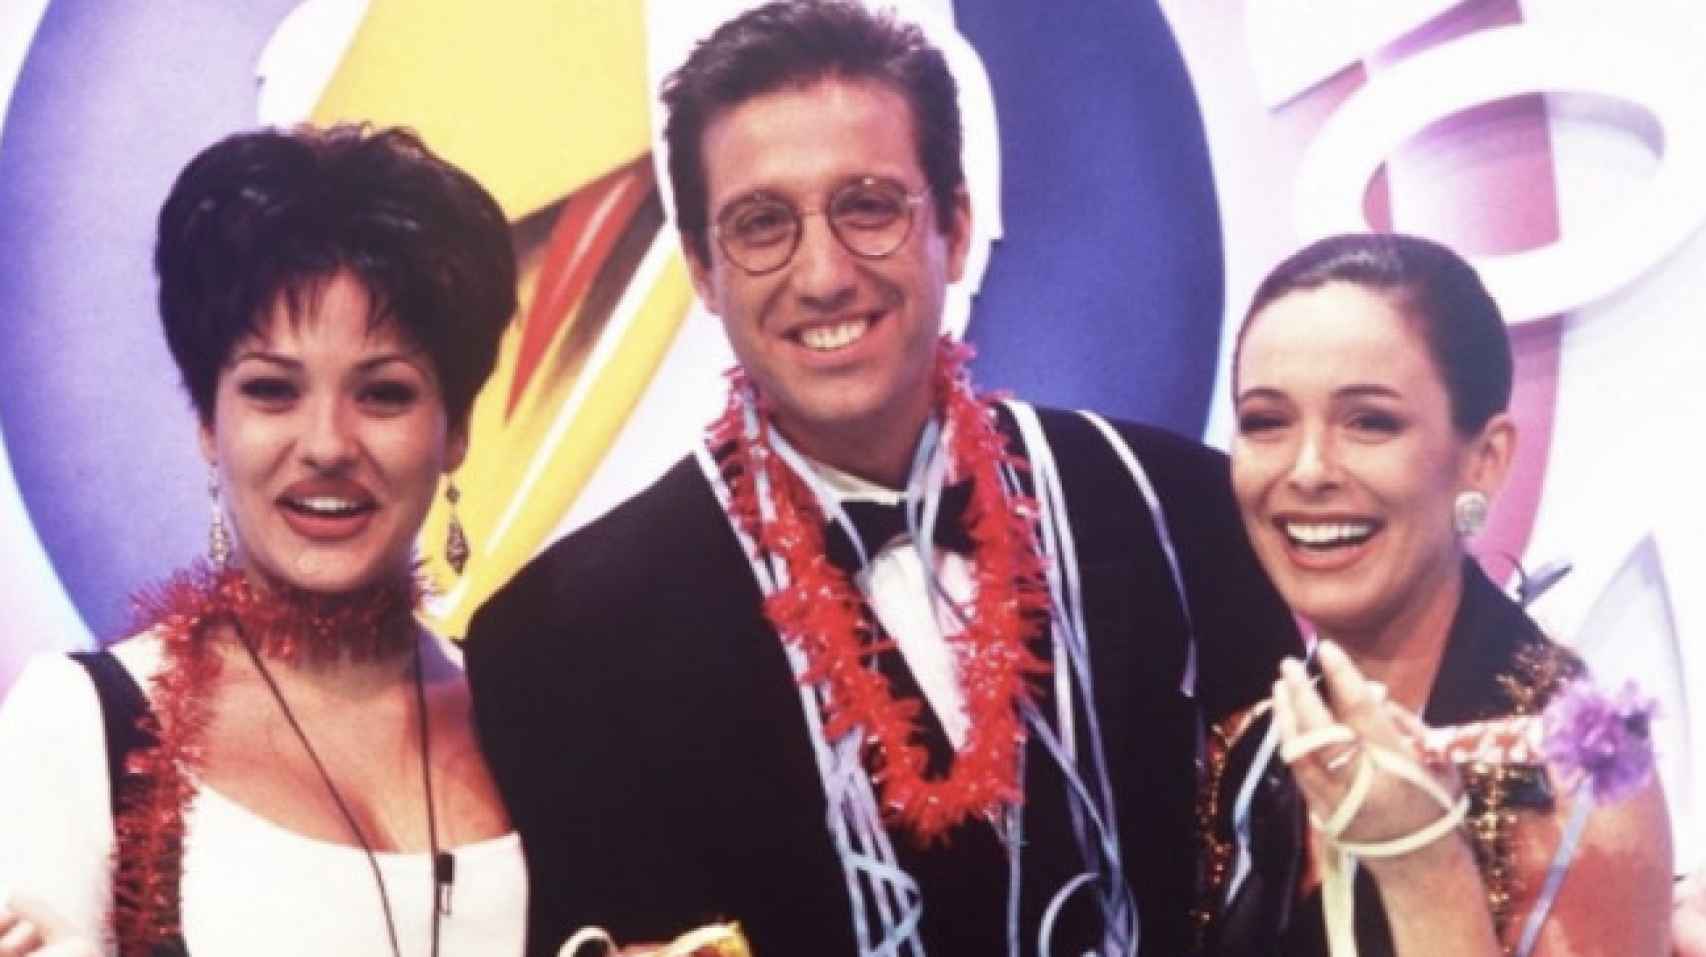 Los presentadores del Juego de la oca. De izquierda a derecha: Patricia Pérez, Emilio Aragón y Lydia Bosch.